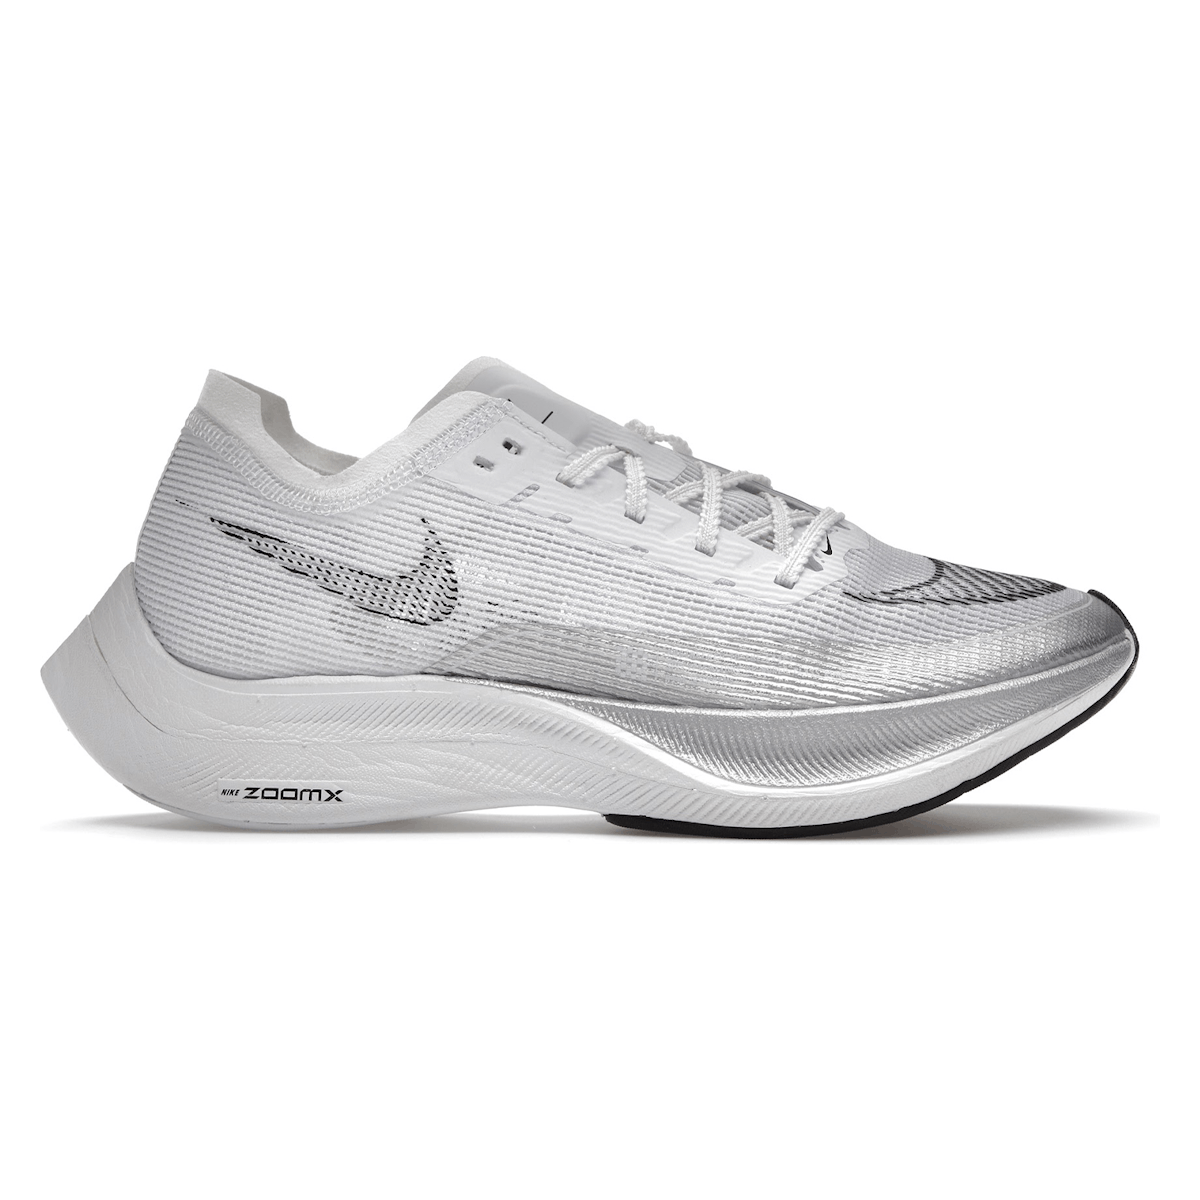 Nike ZoomX Vaporfly Next% 2 White Metallic Silver (W)